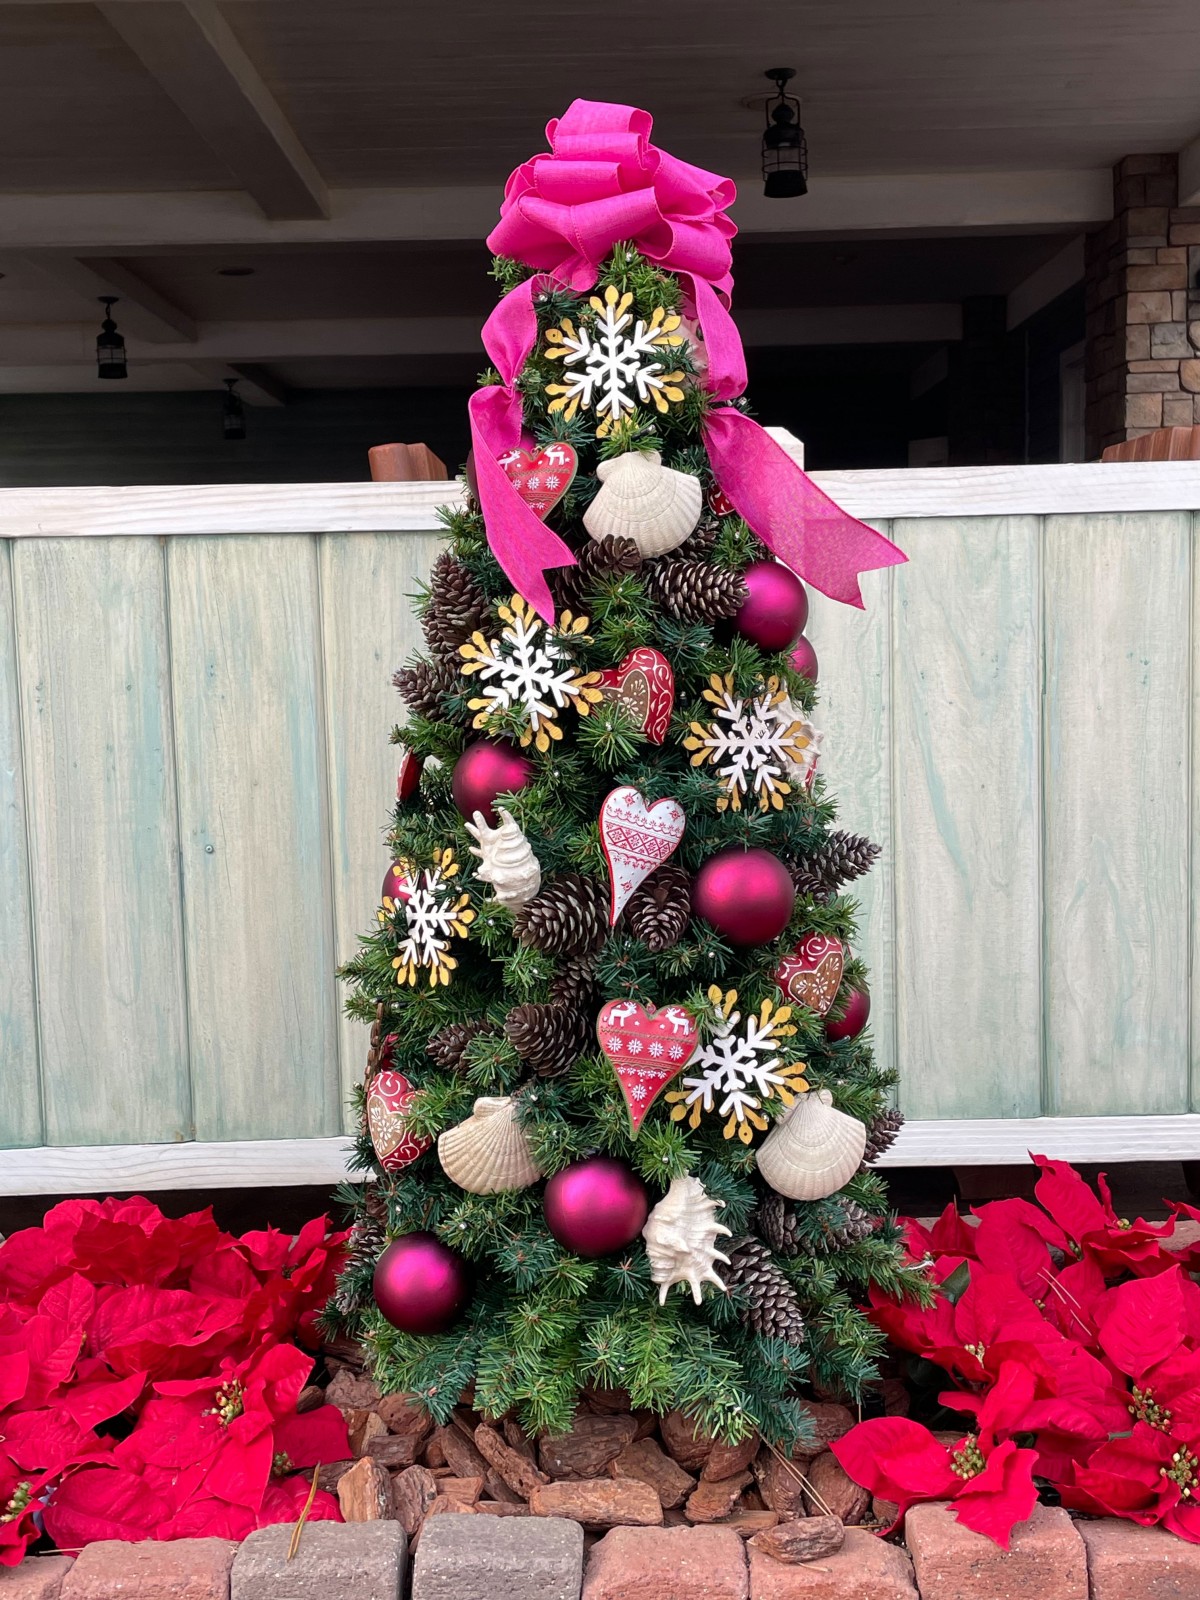 画像・写真 | TDS、巨大クリスマスツリー“4年ぶり復活” ダッフィー ...